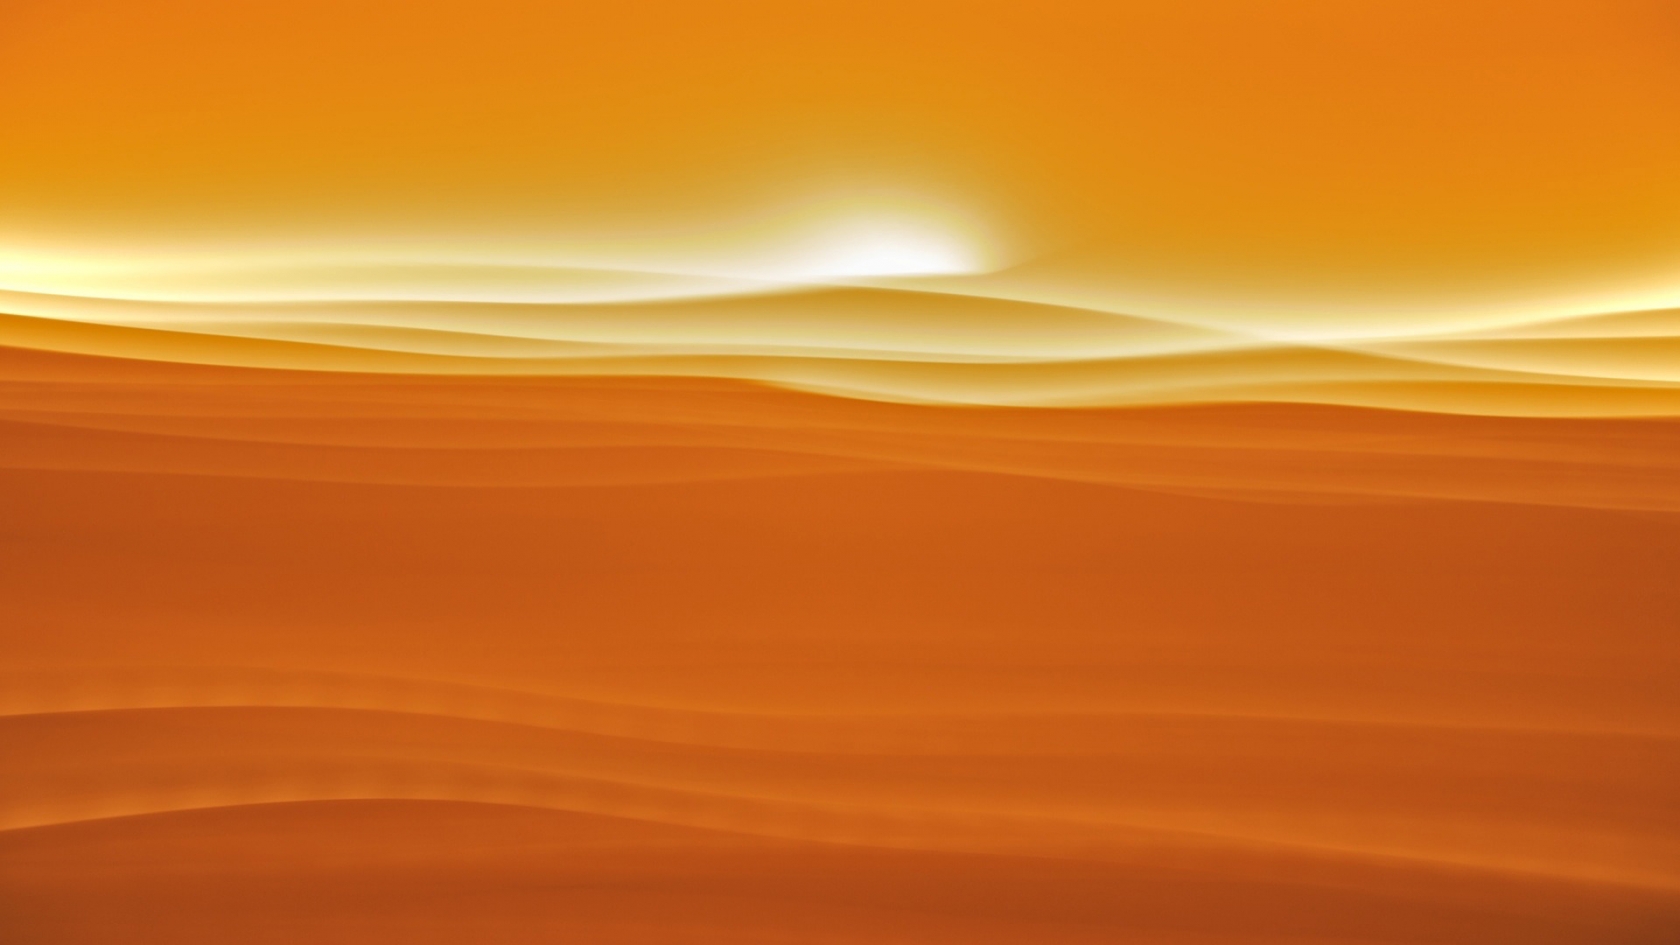 Desert sunlight for 1680 x 945 HDTV resolution